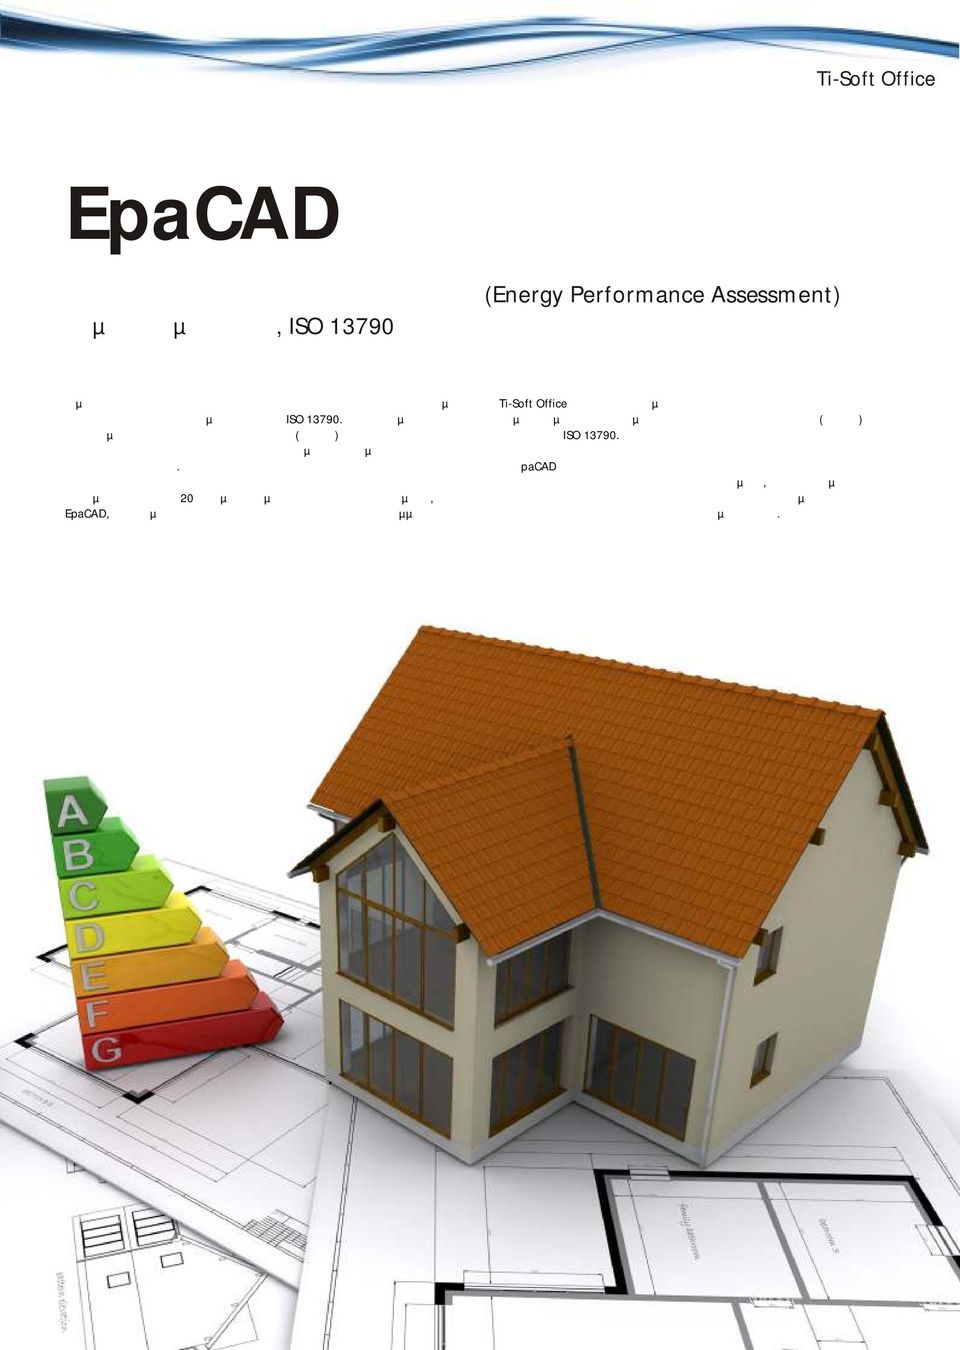 Ενσωµατώνοντας την 20ετή εµπειρία µας στην παραγωγή λογισµικού, το EpaCAD, πρώτο µέλος της νέας γενιάς των ενεργειακών προγραµµάτων του σάς βοηθά στη µελέτη της ενεργειακής απόδοσης κτιρίων σύµφωνα